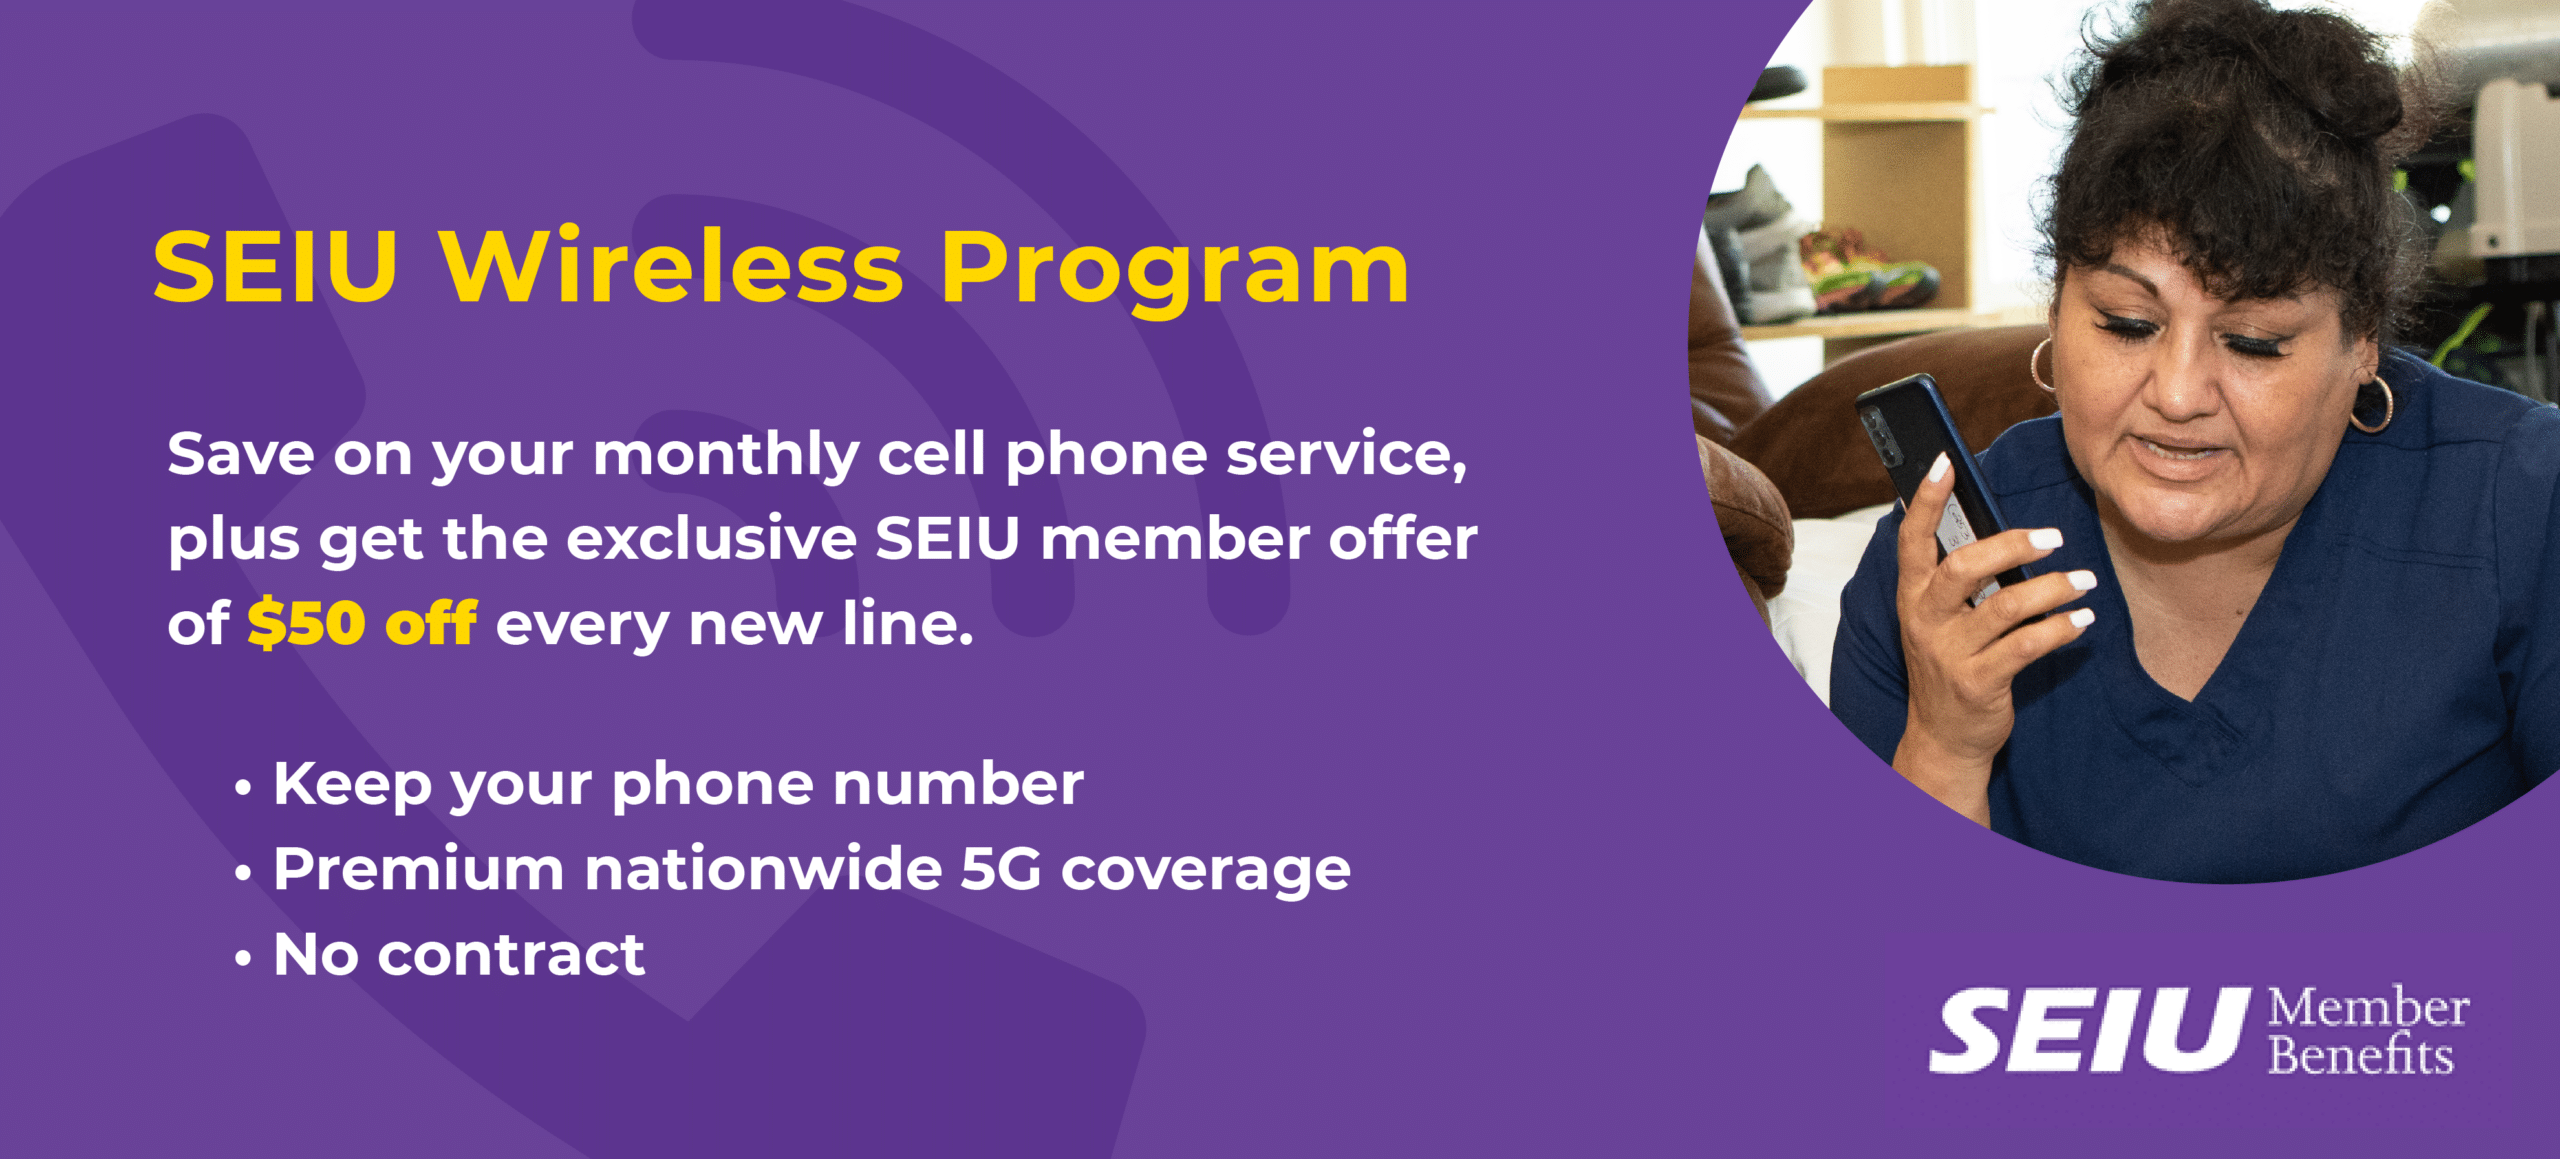 SEIU Wireless Program